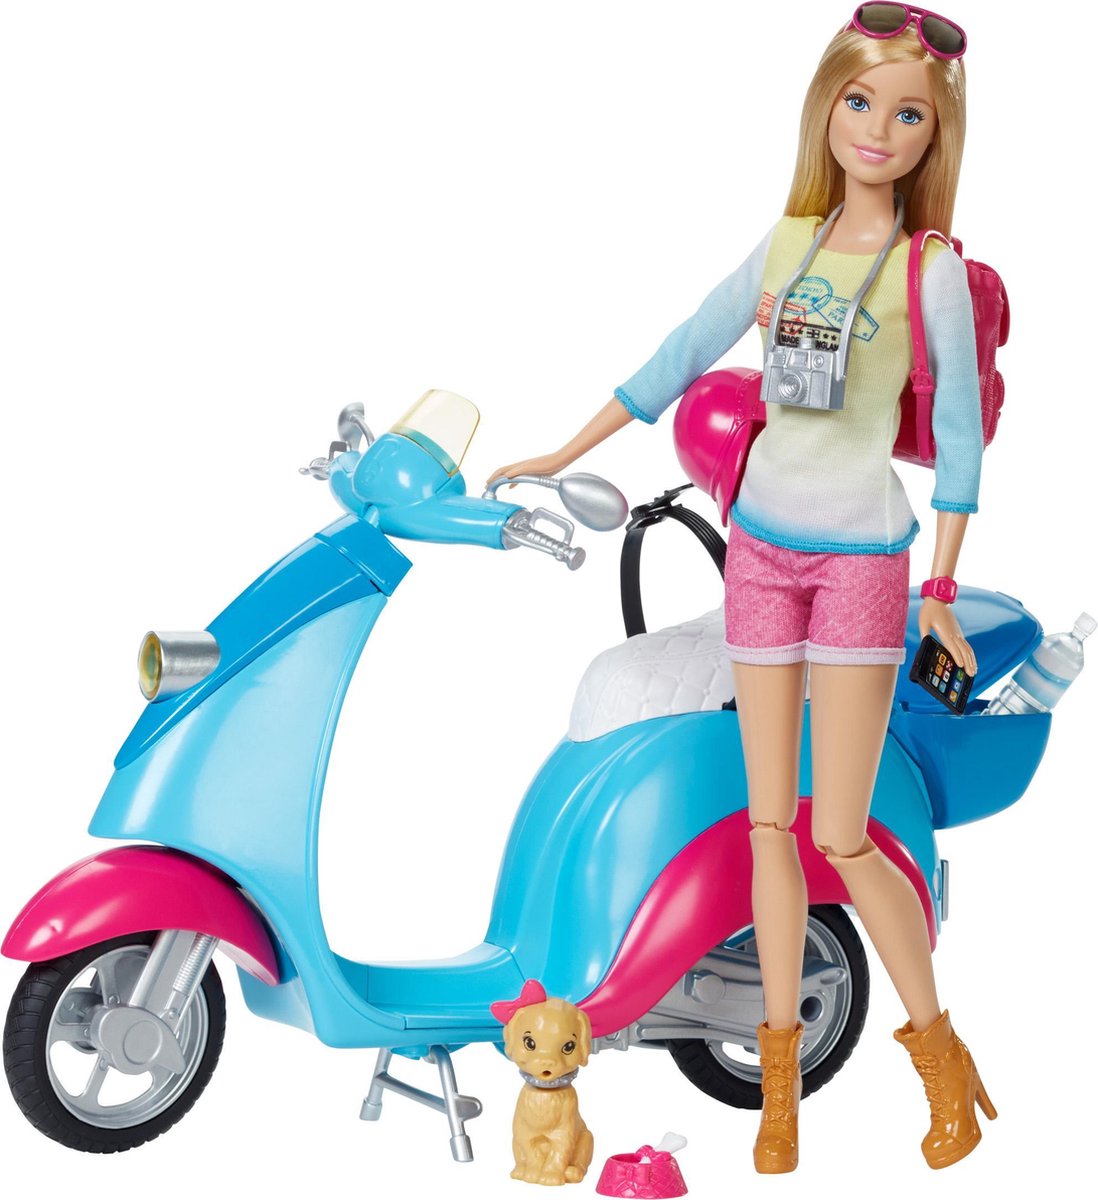 Port Generaliseren Portret Barbie met Scooter - Barbiepop | bol.com